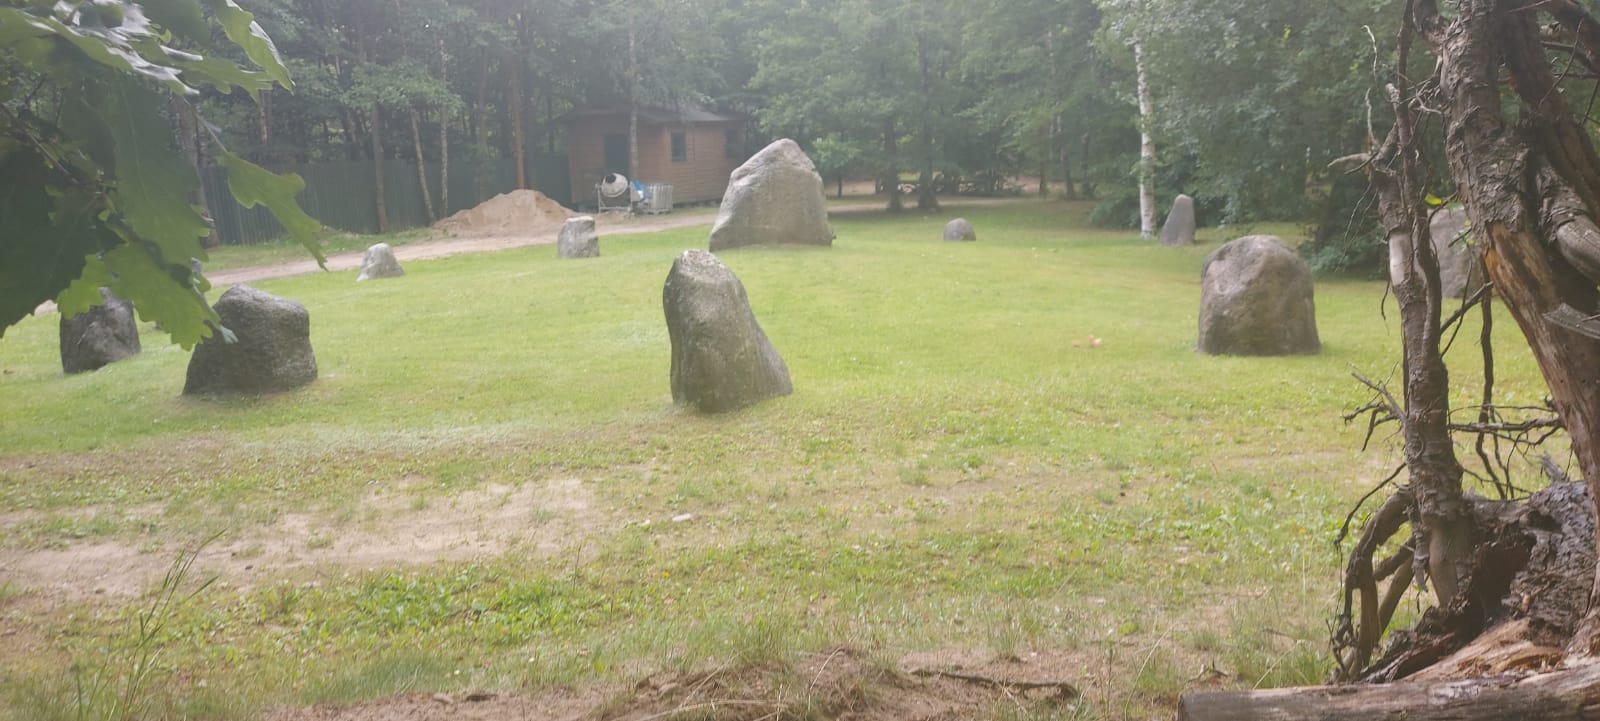 Kręgi z kamieni ustawione na zielonej trawie wokół drzewa.